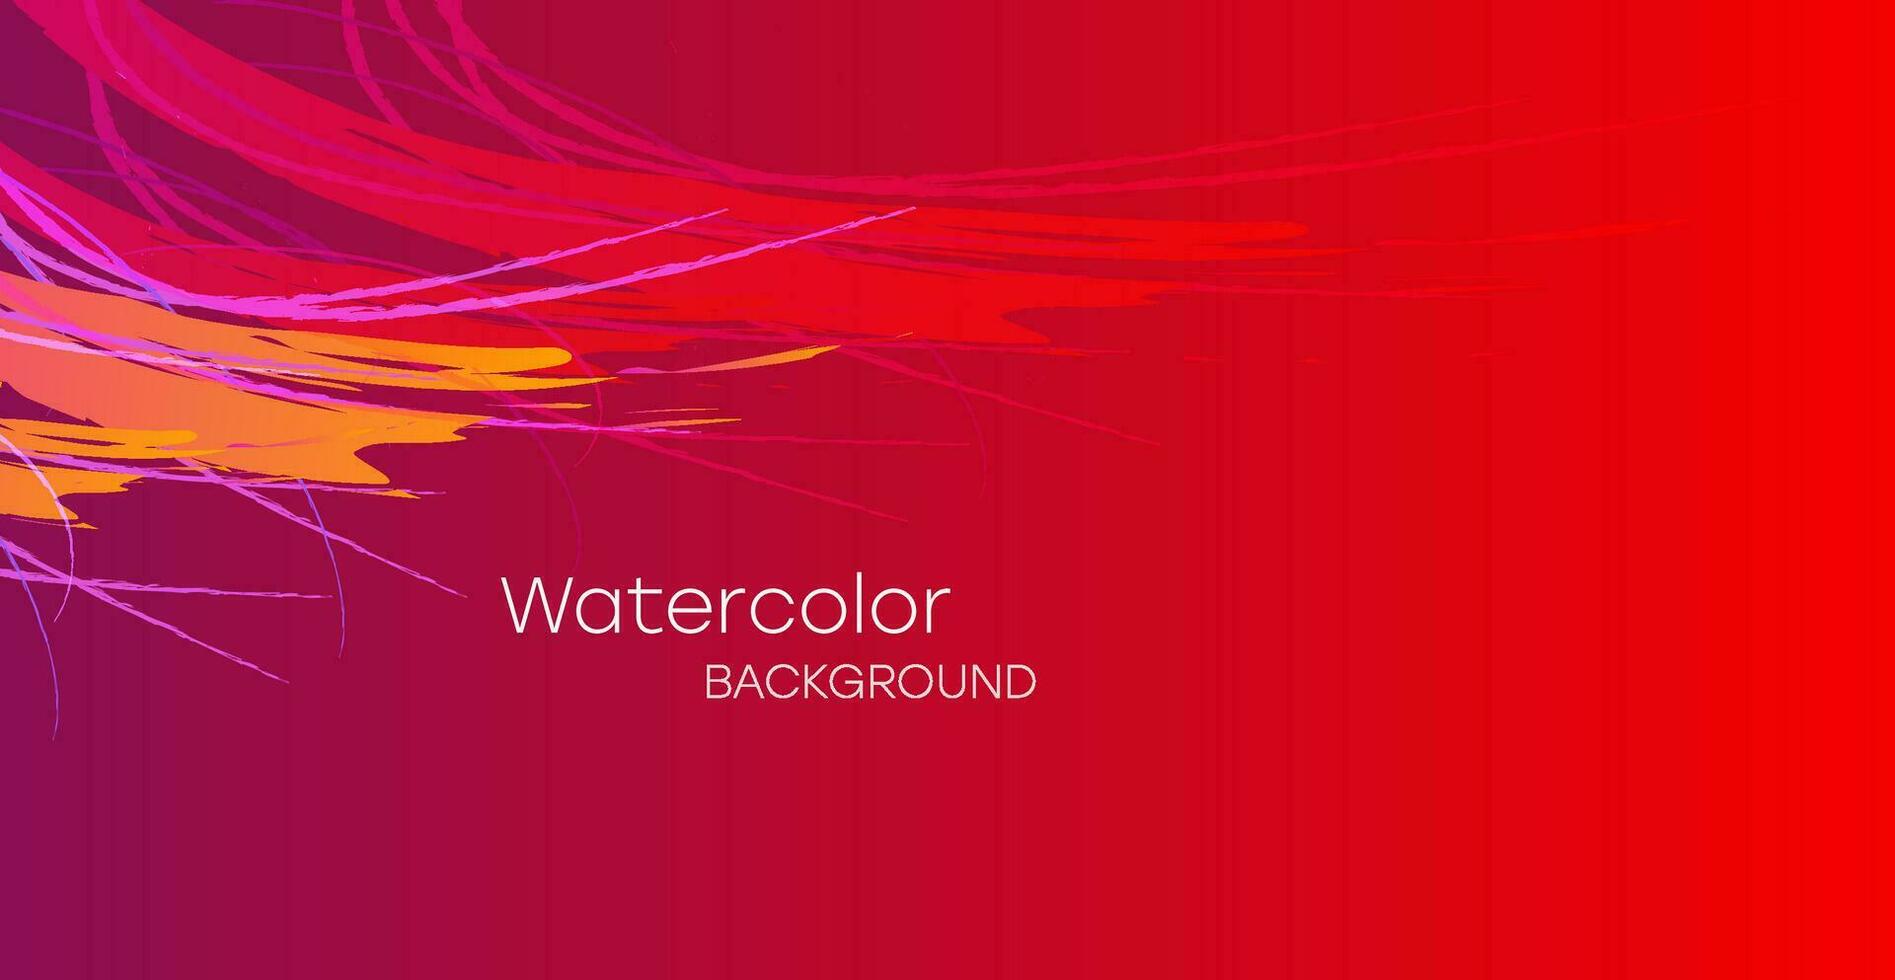 färgrik vattenfärg bakgrund för affisch, broschyr, kort eller flygblad. vektor